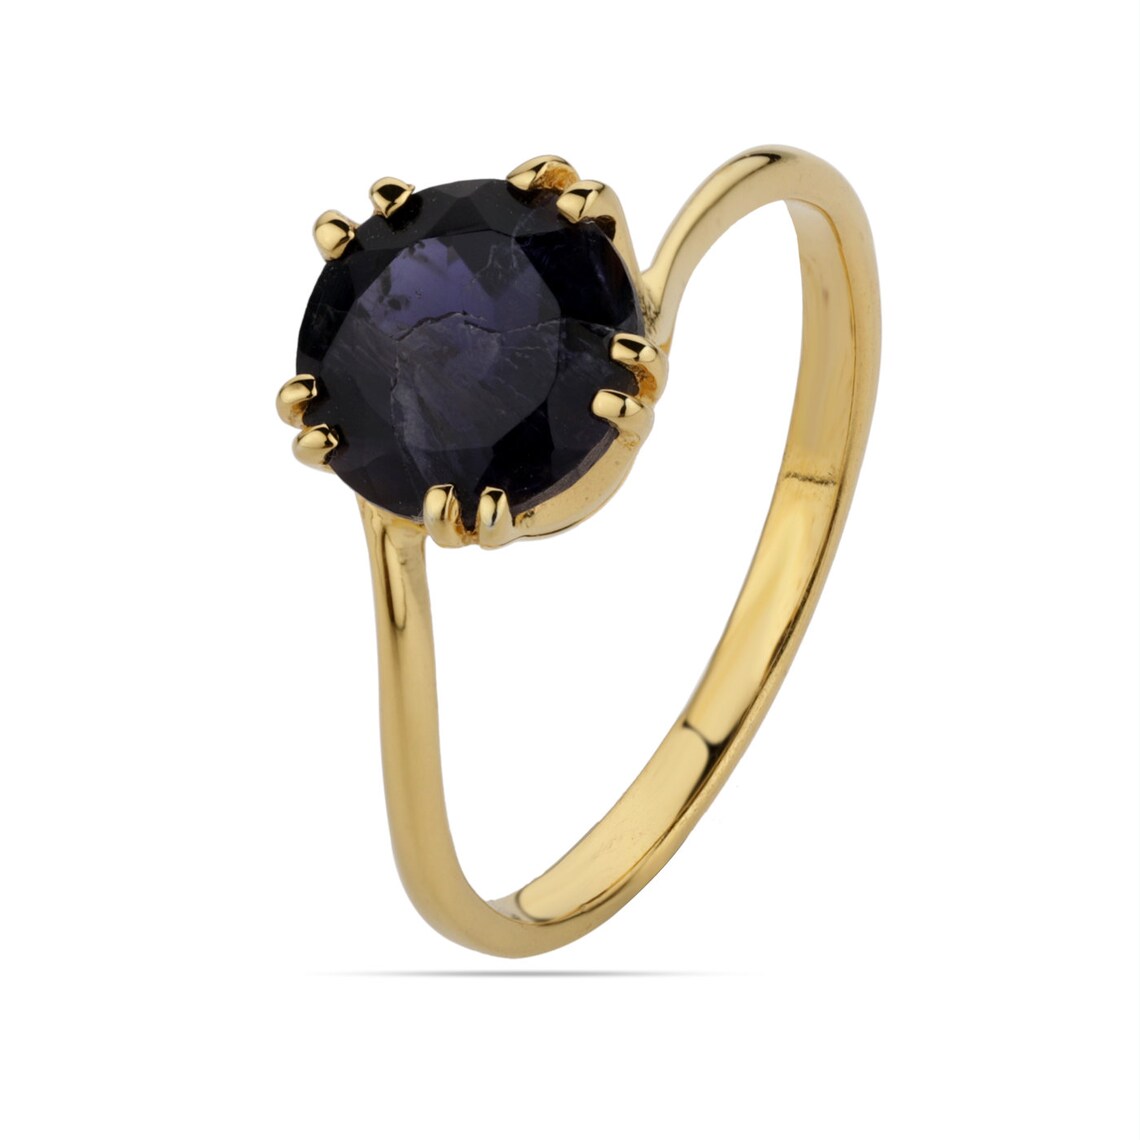 Round Iolite Gold Ring,iolite Gemstone Ring, iolite prong ring